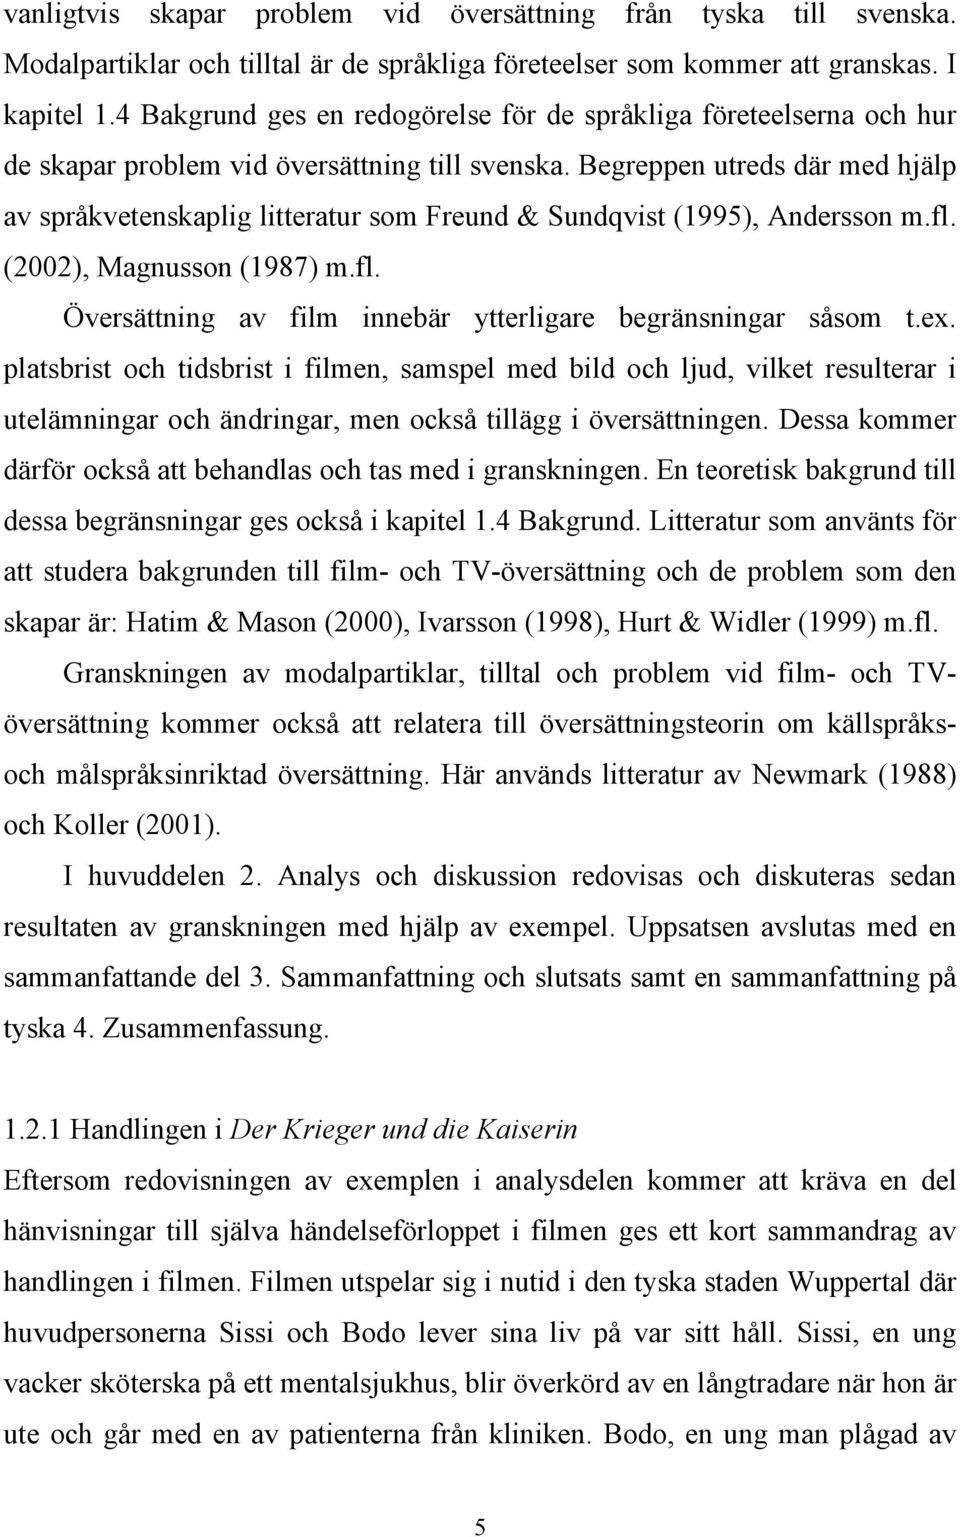 Begreppen utreds där med hjälp av språkvetenskaplig litteratur som Freund & Sundqvist (1995), Andersson m.fl. (2002), Magnusson (1987) m.fl. Översättning av film innebär ytterligare begränsningar såsom t.